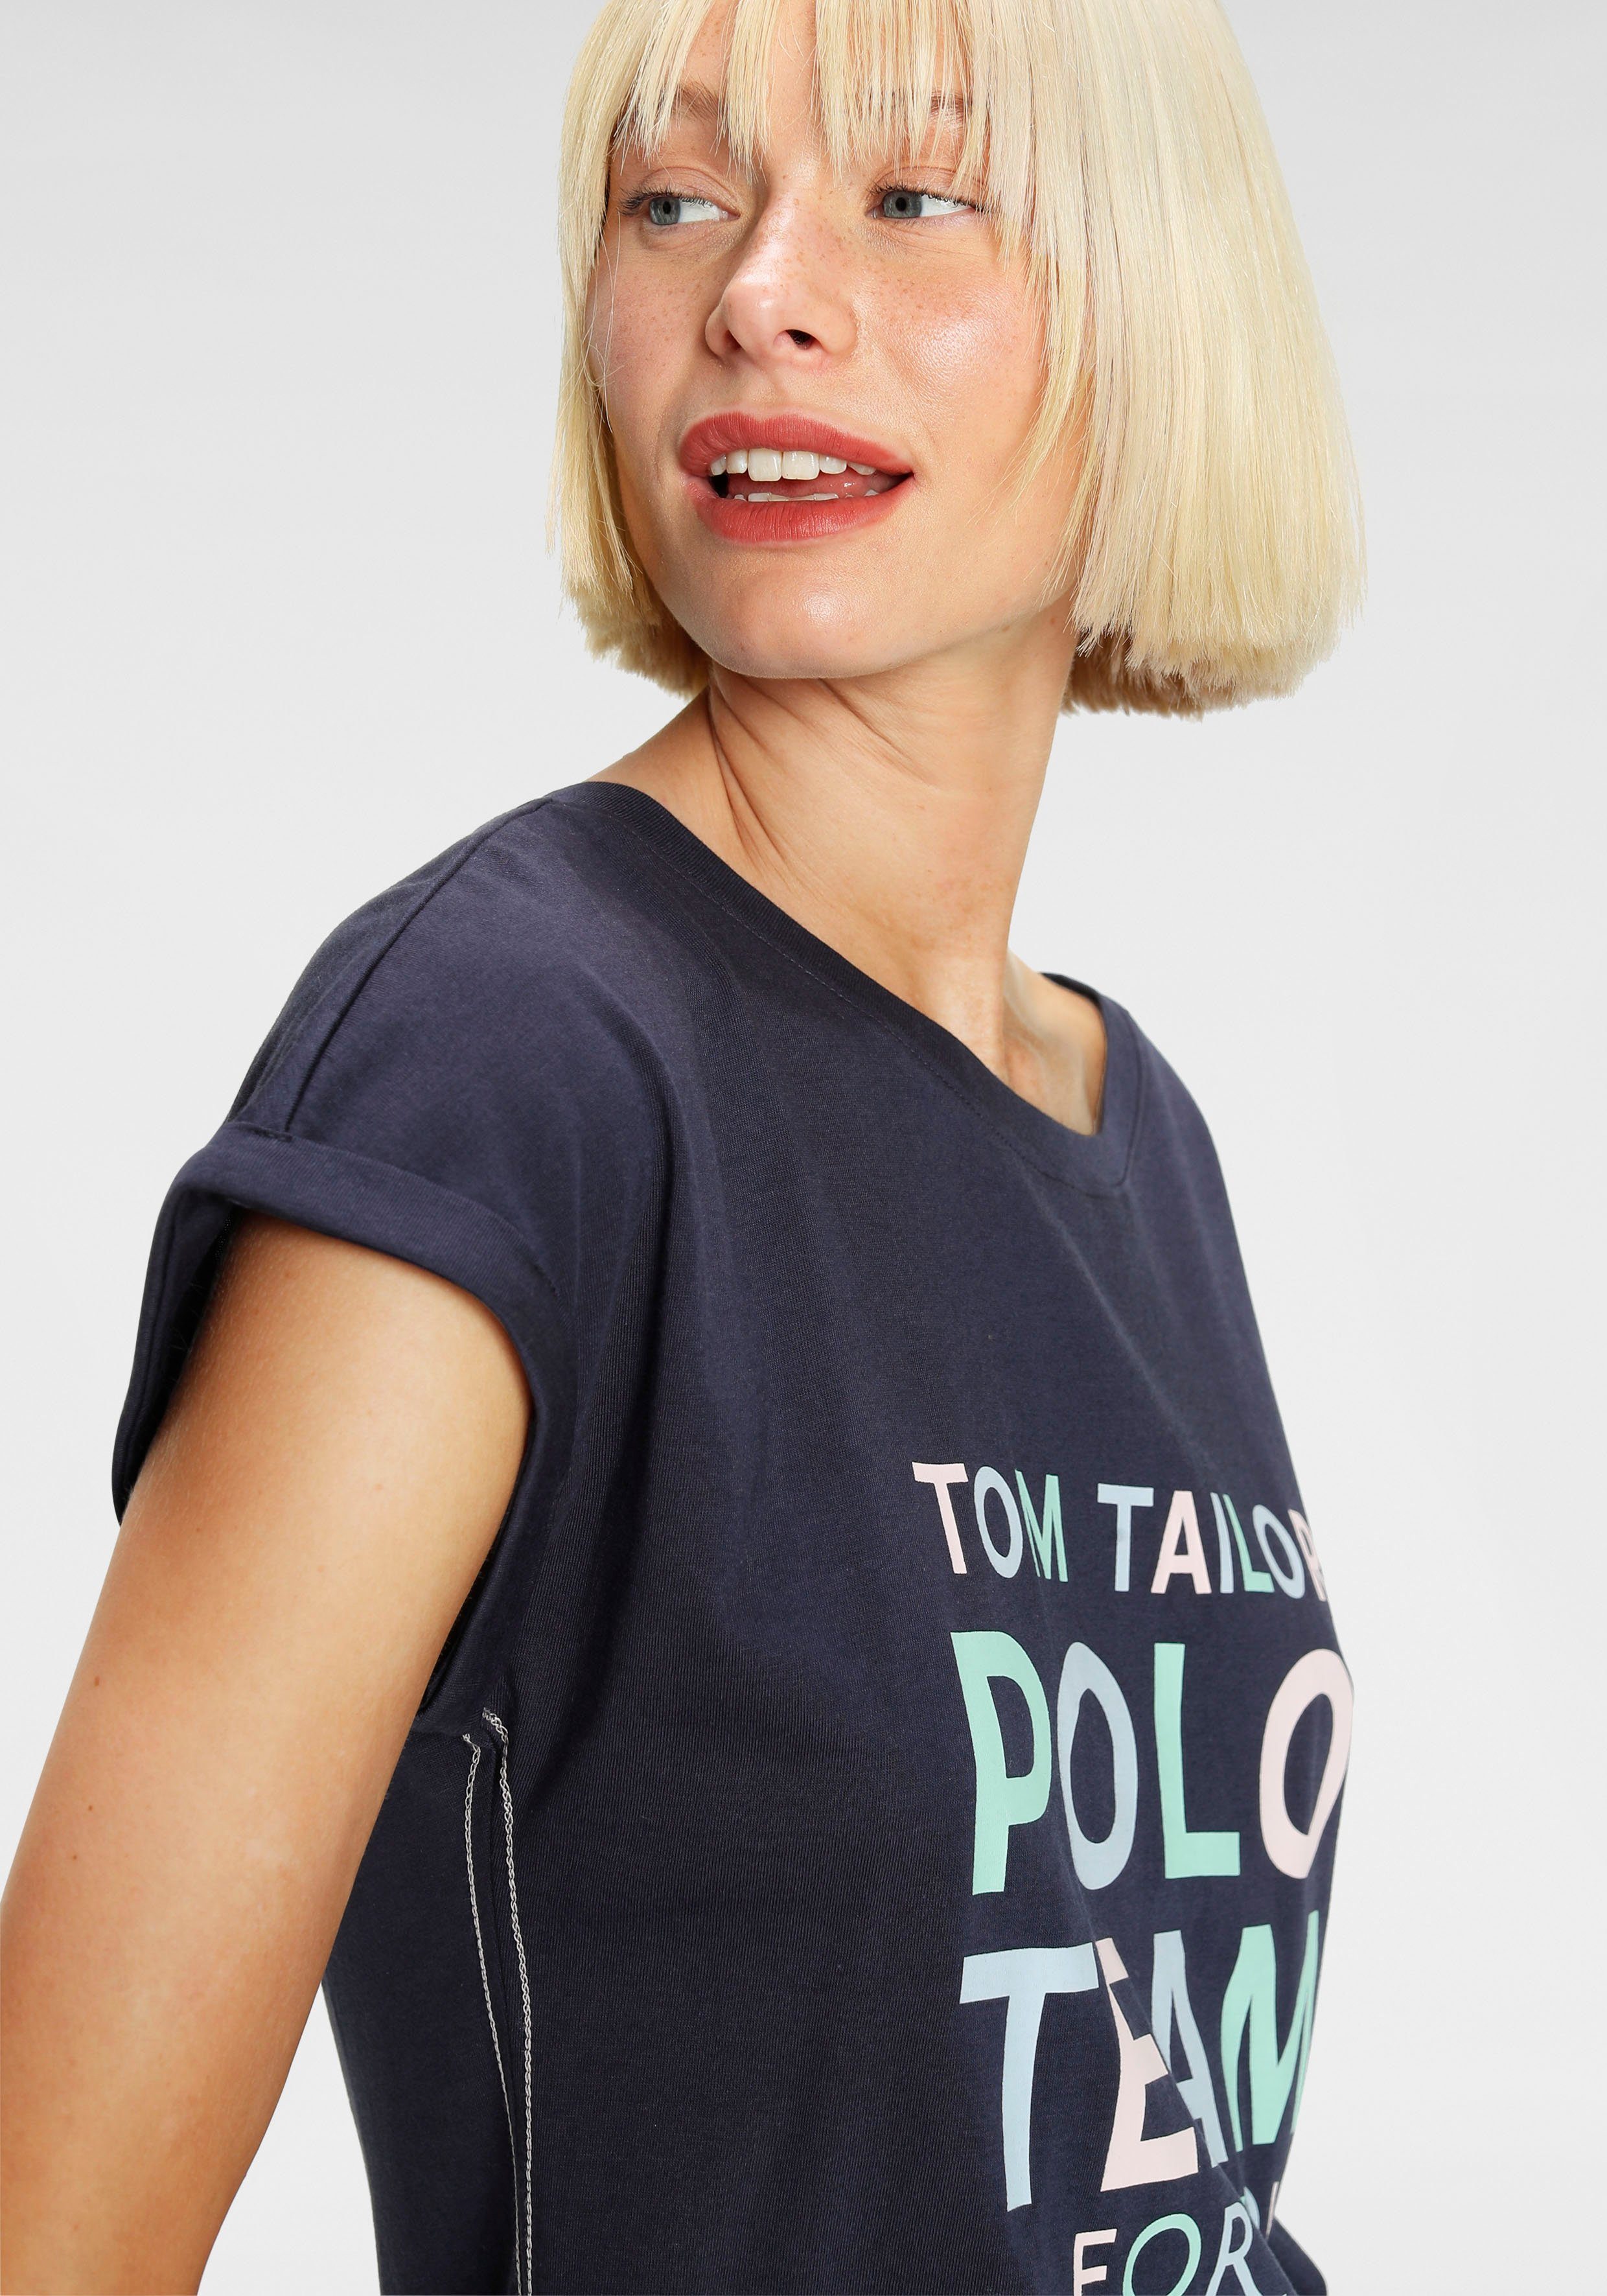 TOM TAILOR Polo Team Logo-Print farbenfrohen Print-Shirt großem